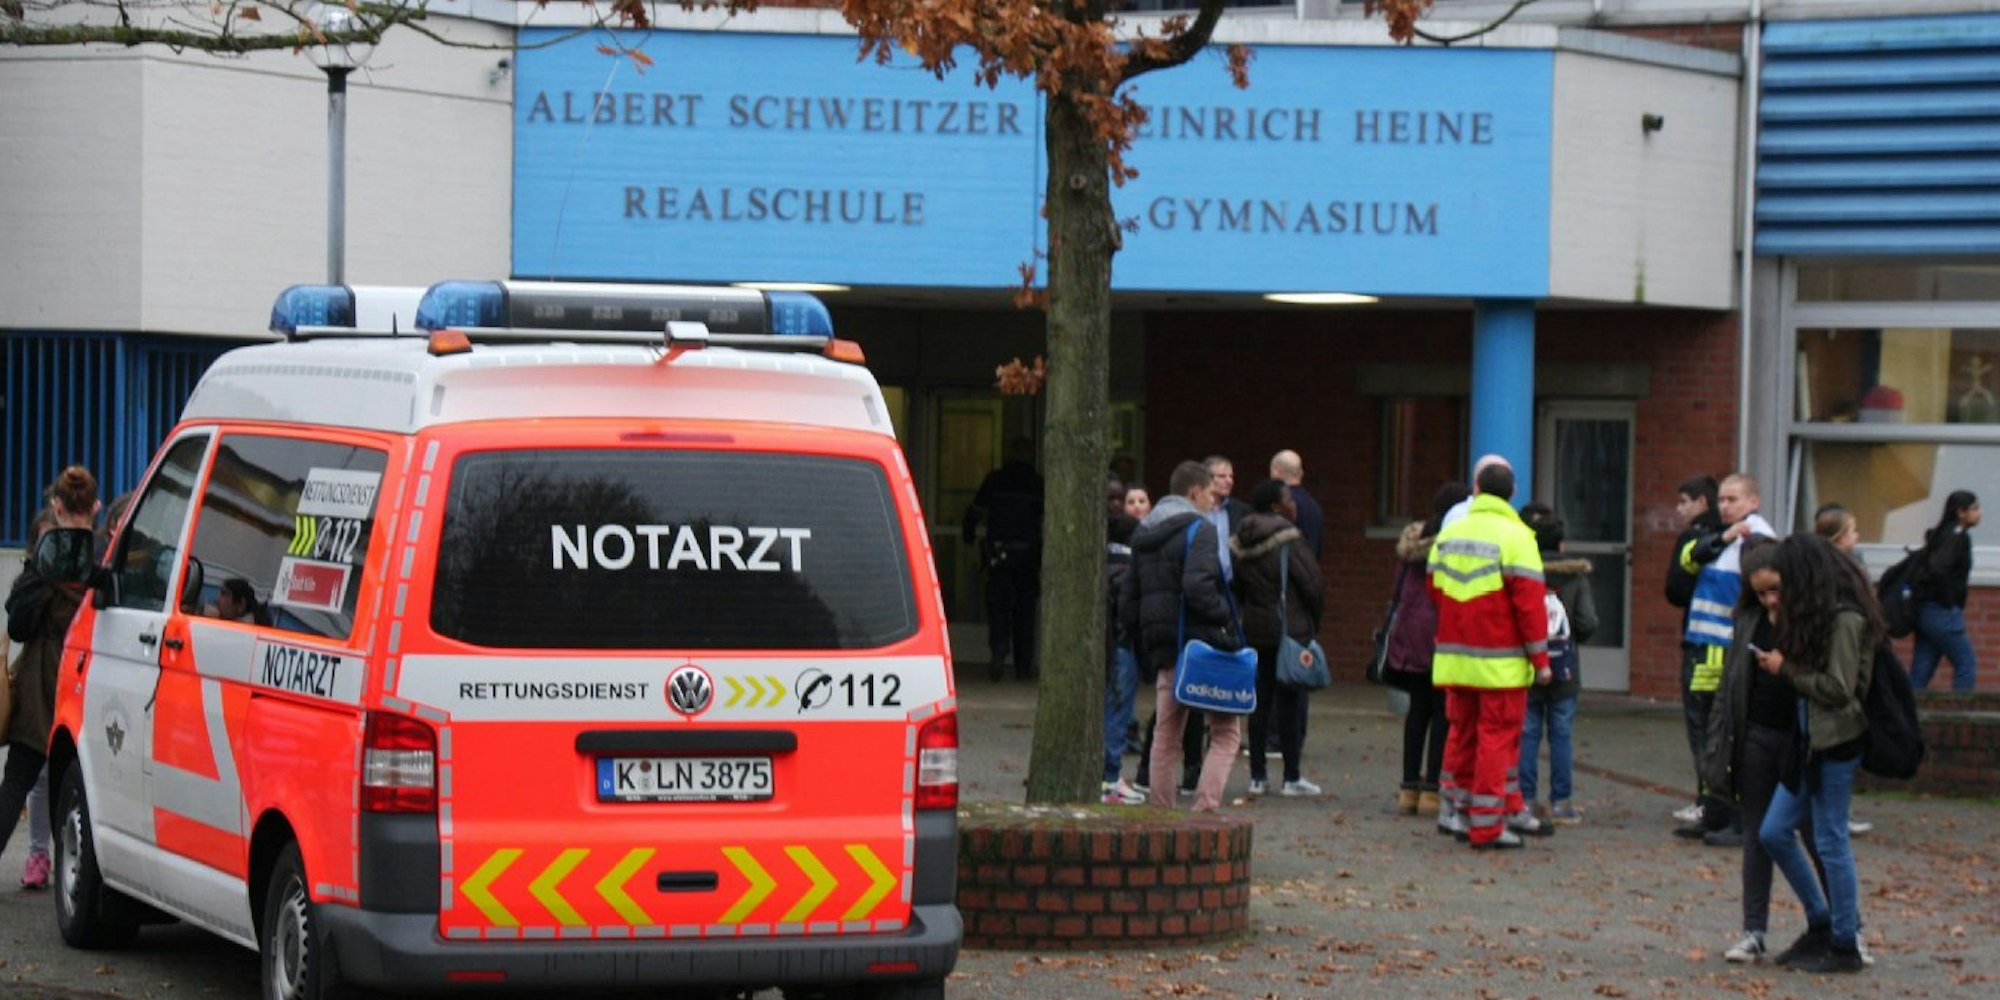 Der Hof des Ostheimer Schulzentrums: Die Polizei setzte bei der Schlägerei Tränengas ein. 20 Schüler mussten mit Atemwegsreizungen behandelt werden.